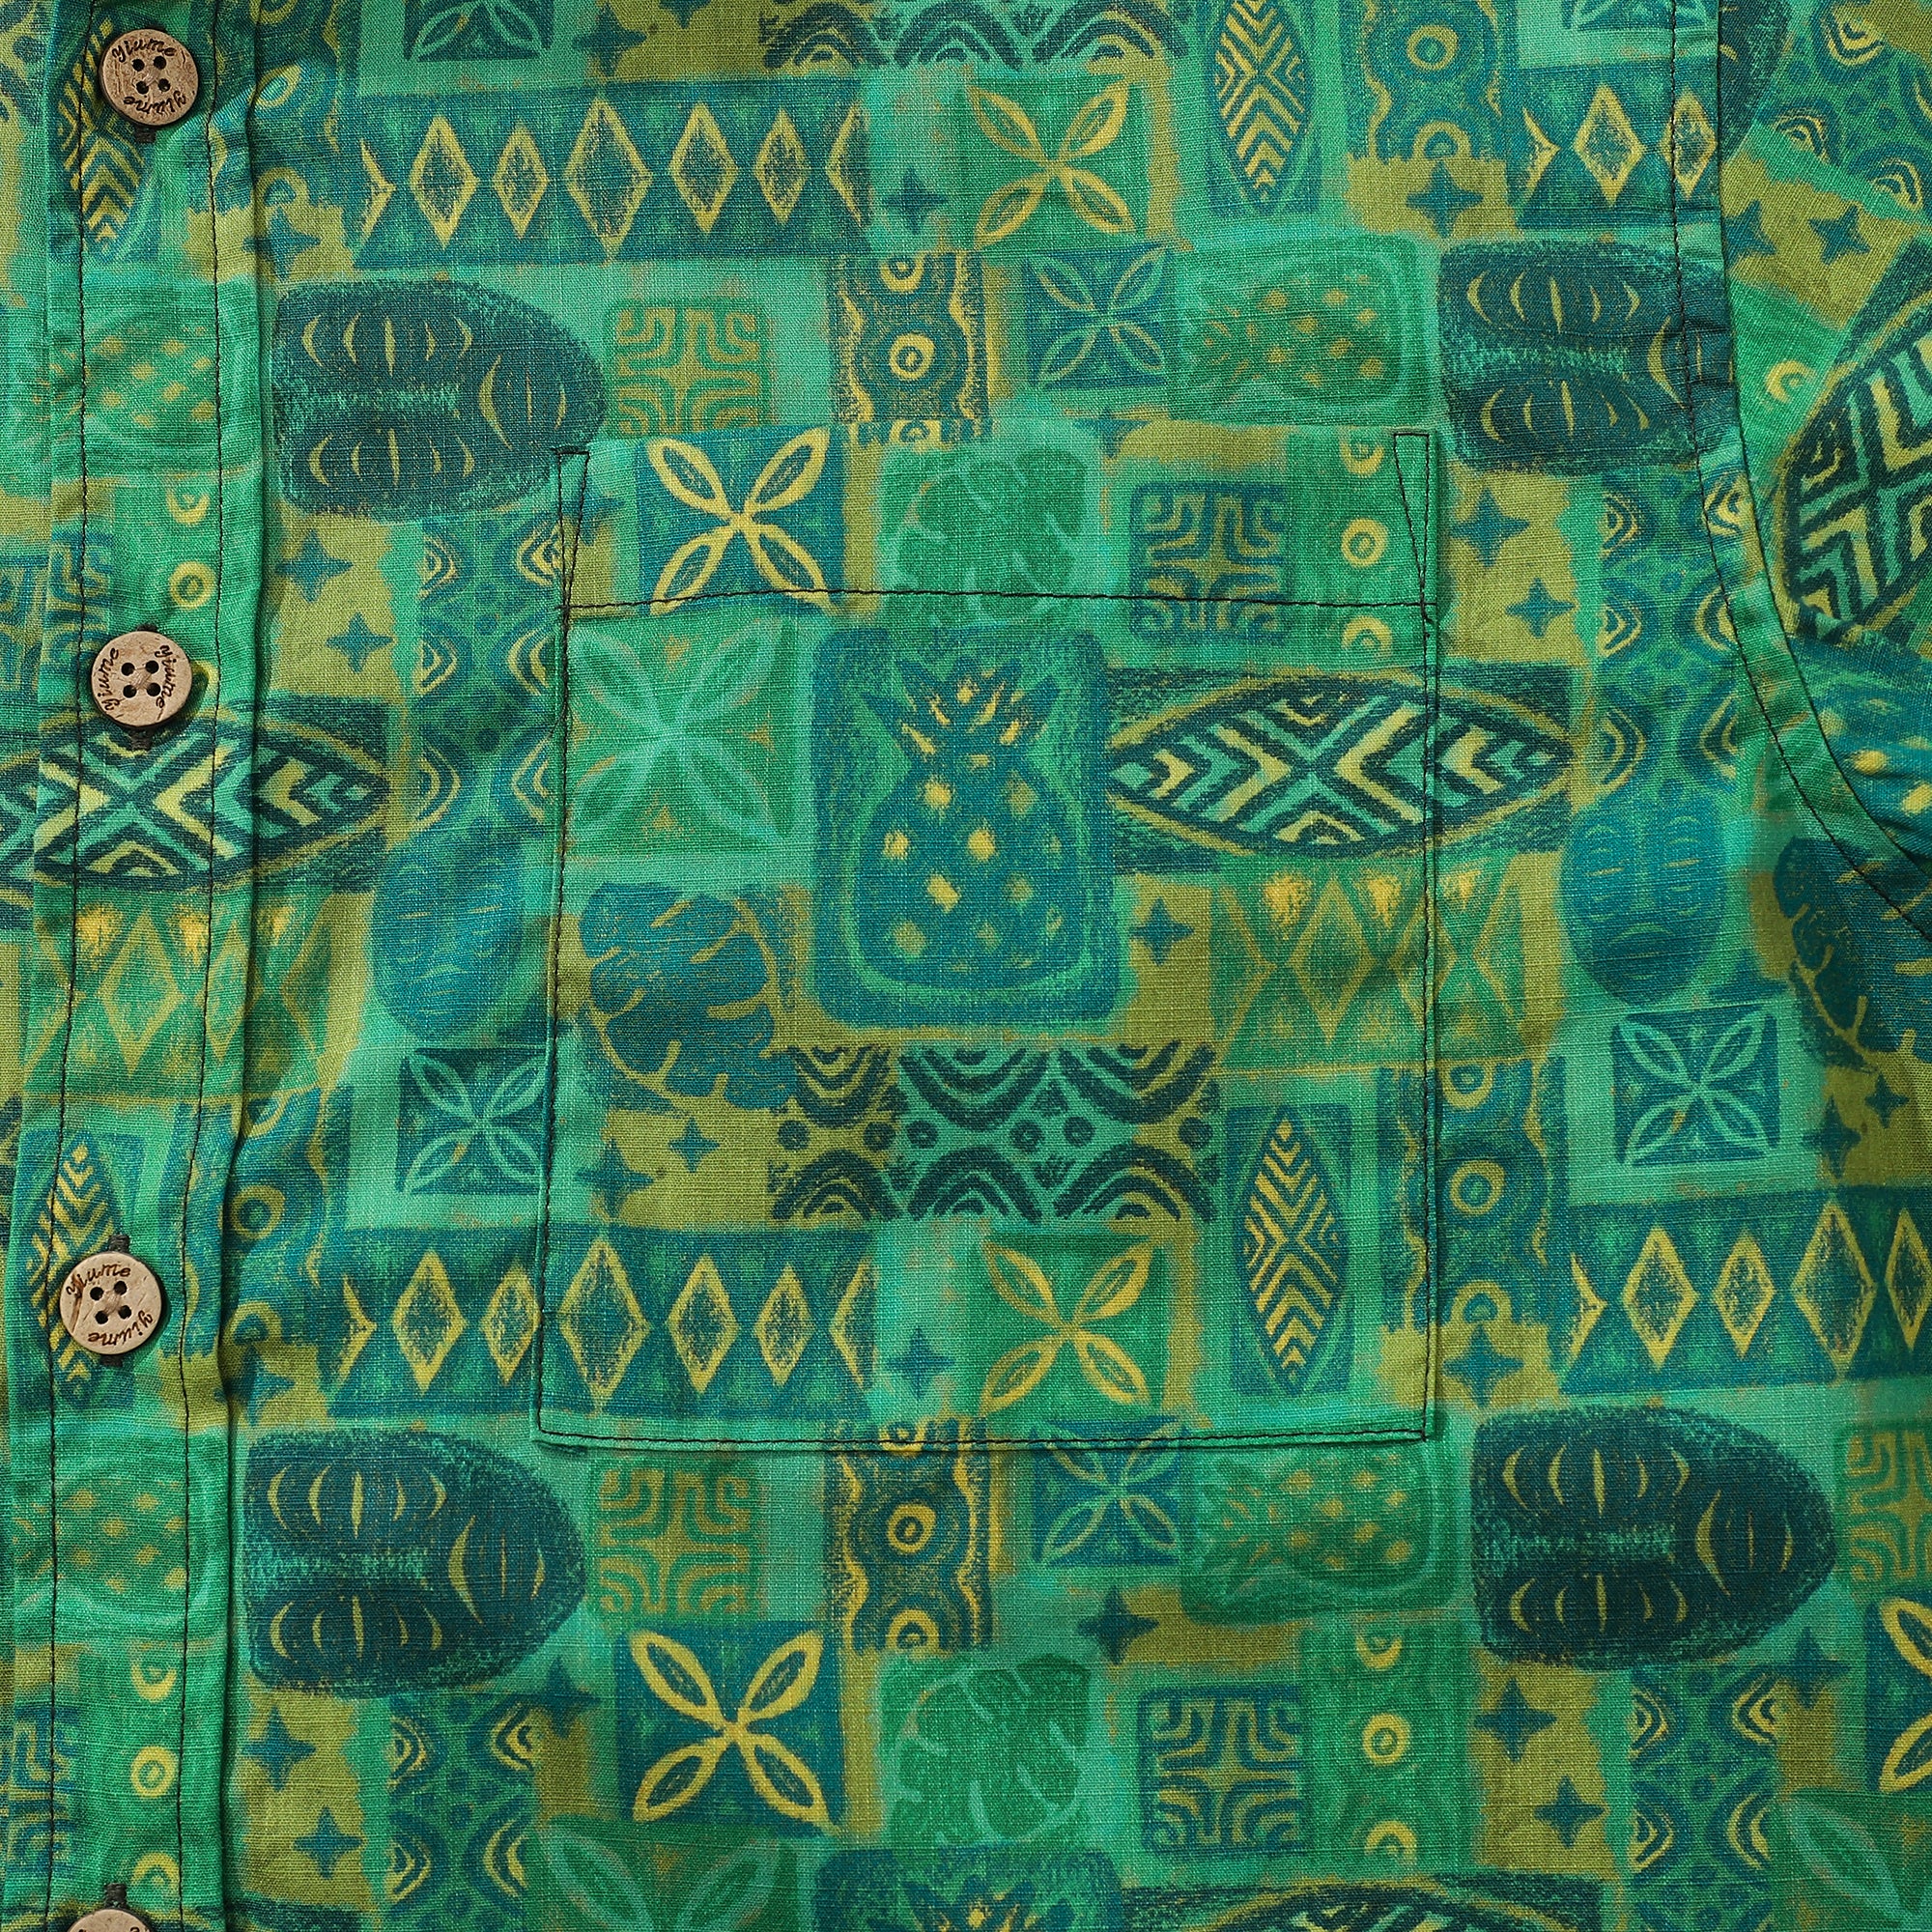 Hawaii-Hemden für Herren, Tiki-Vintage-Shirt, grünes Totem, 100 % Baumwolle